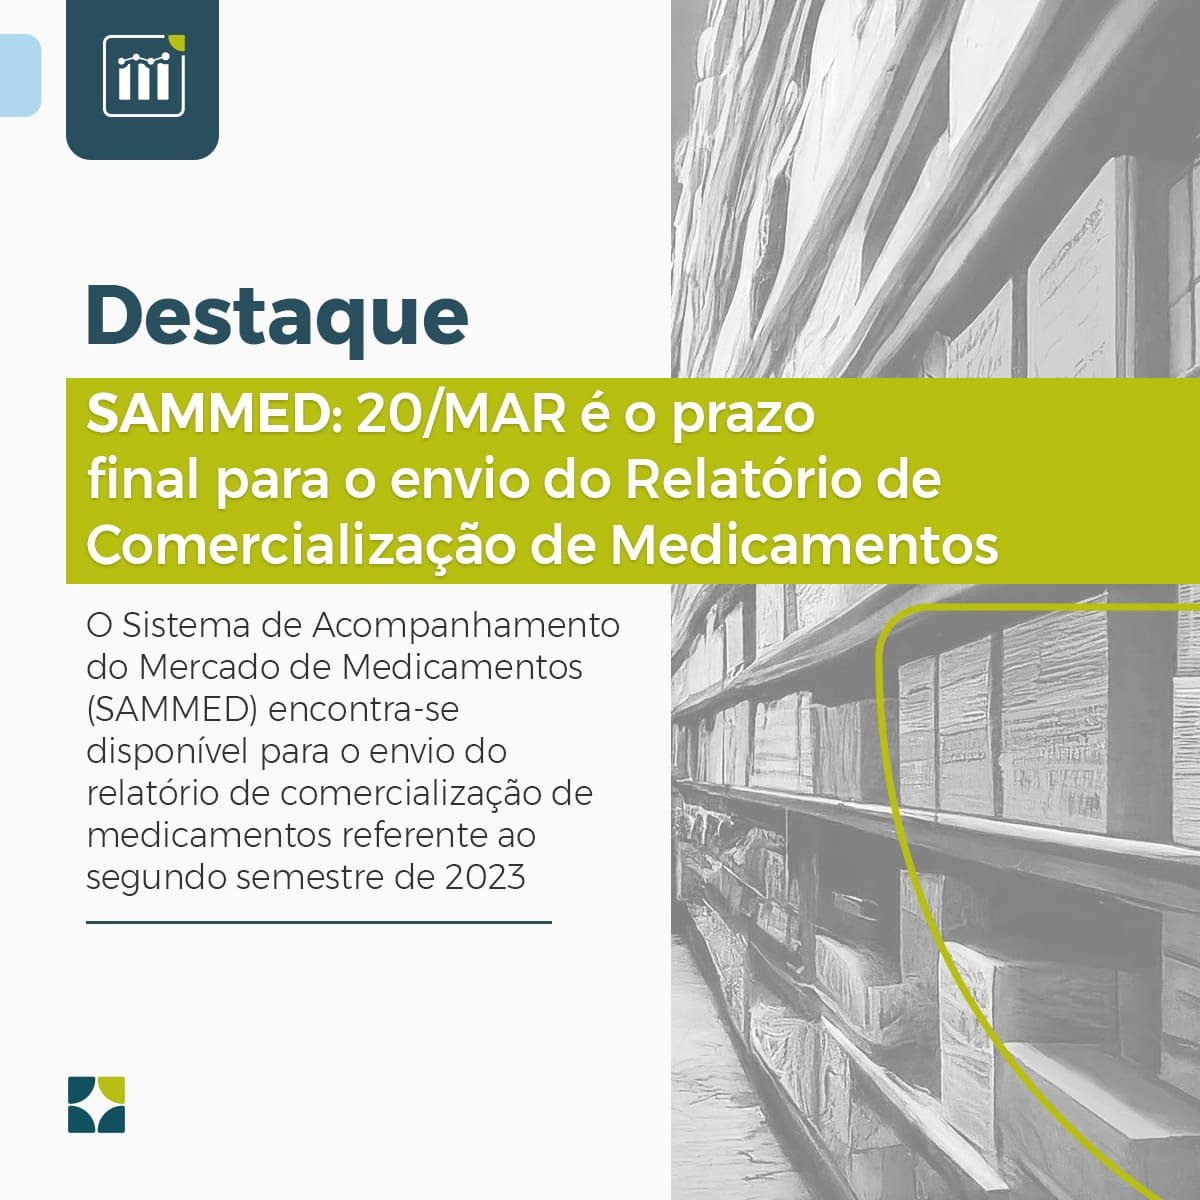 SAMMED: 20/MAR é o prazo final para o envio do Relatório de Comercialização de Medicamentos